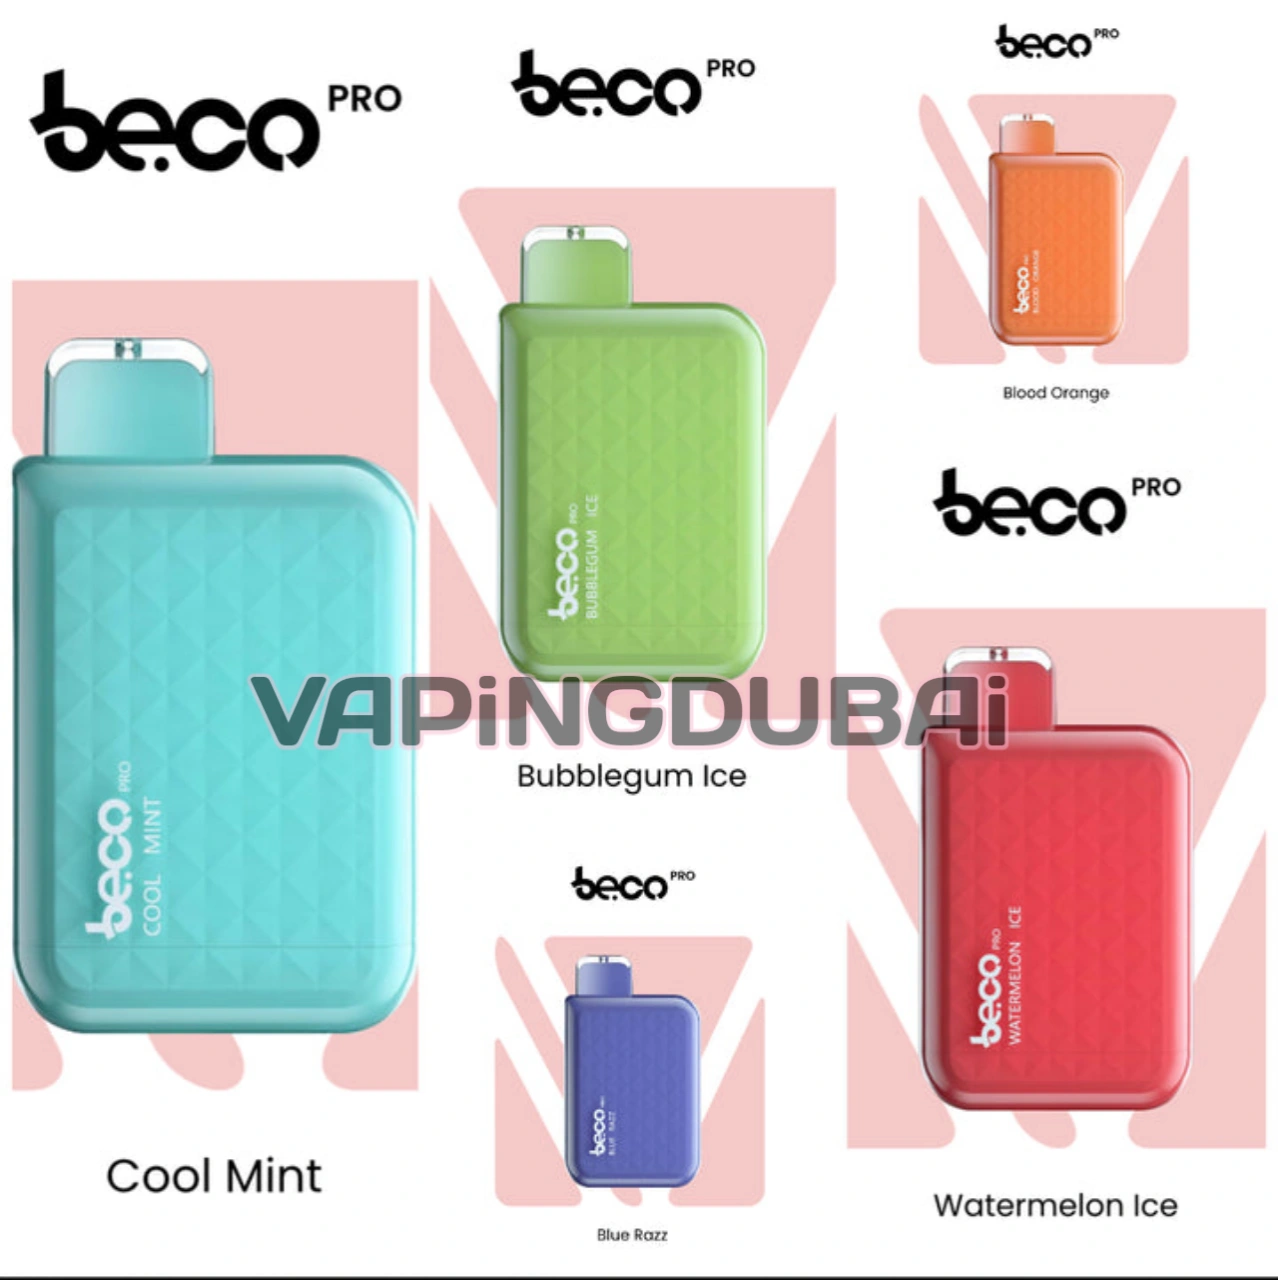 Beco 5000. Beco Pro 5000 затяжек. Beco Pro одноразки. Электронная сигарета Beco. Beco Pro электронная сигарета.